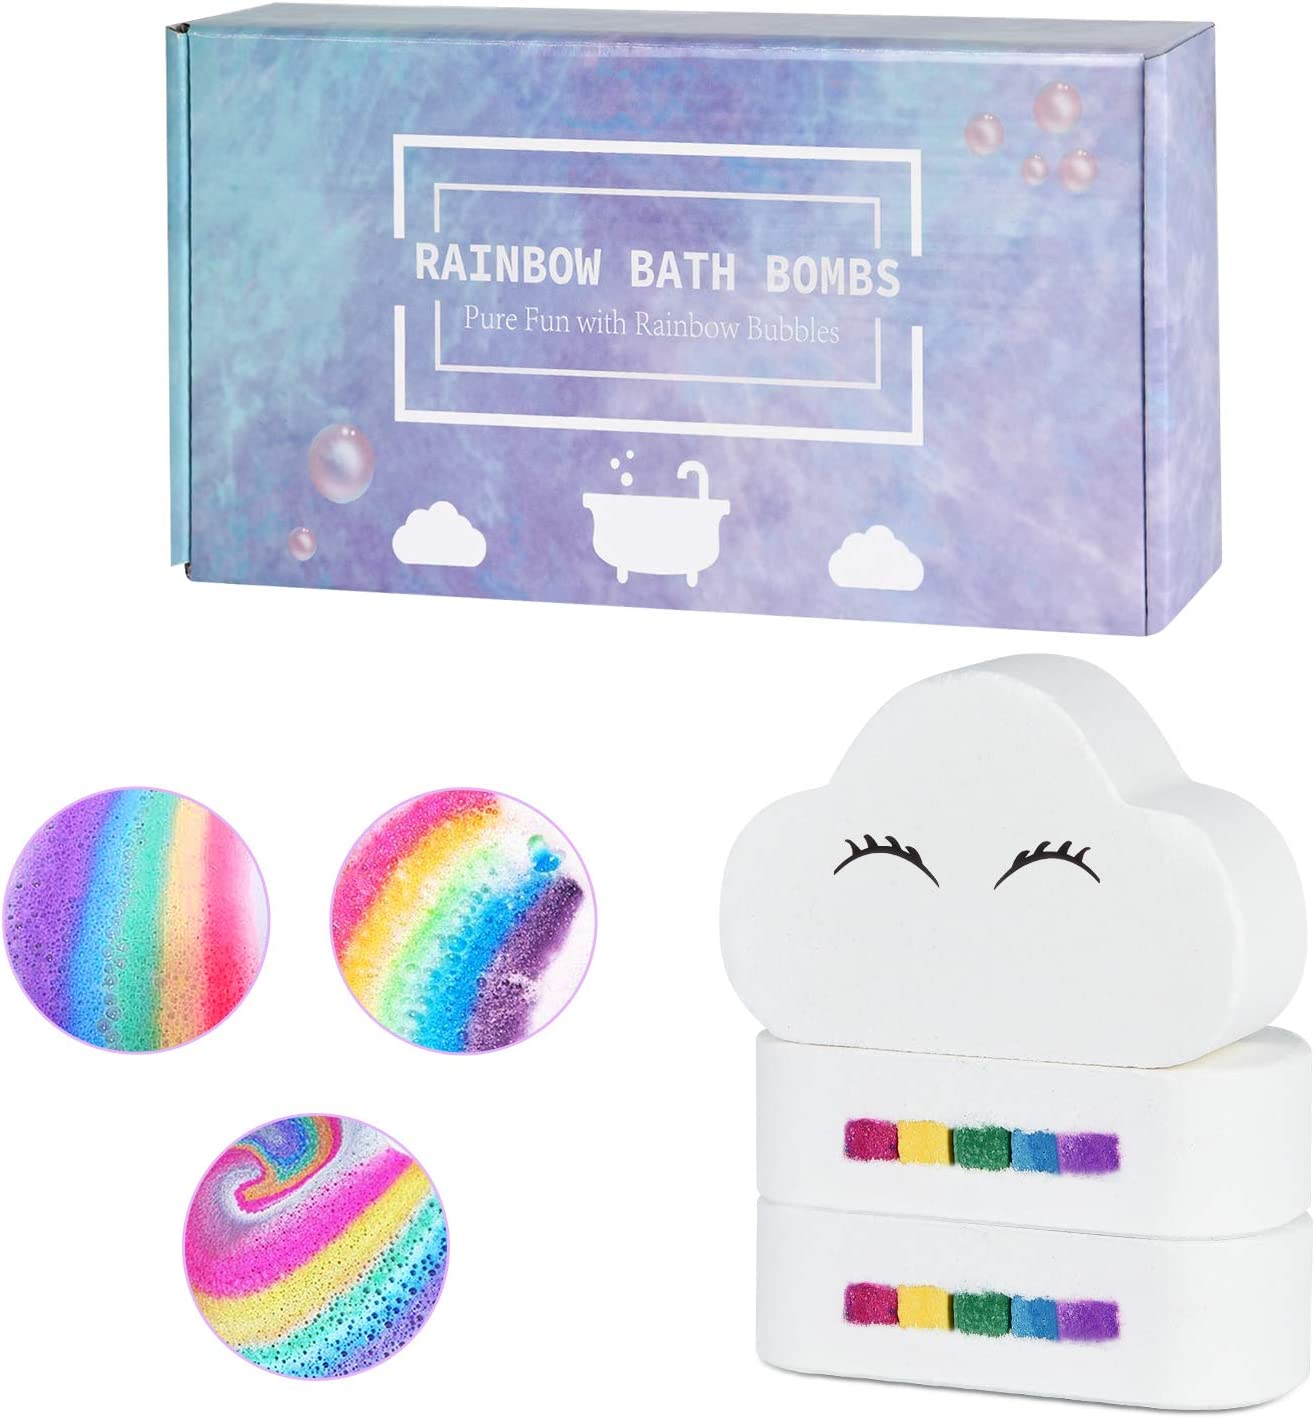 Bombas de banho personalizadas na cor arco-íris para crianças, meninas e mulheres no atacado